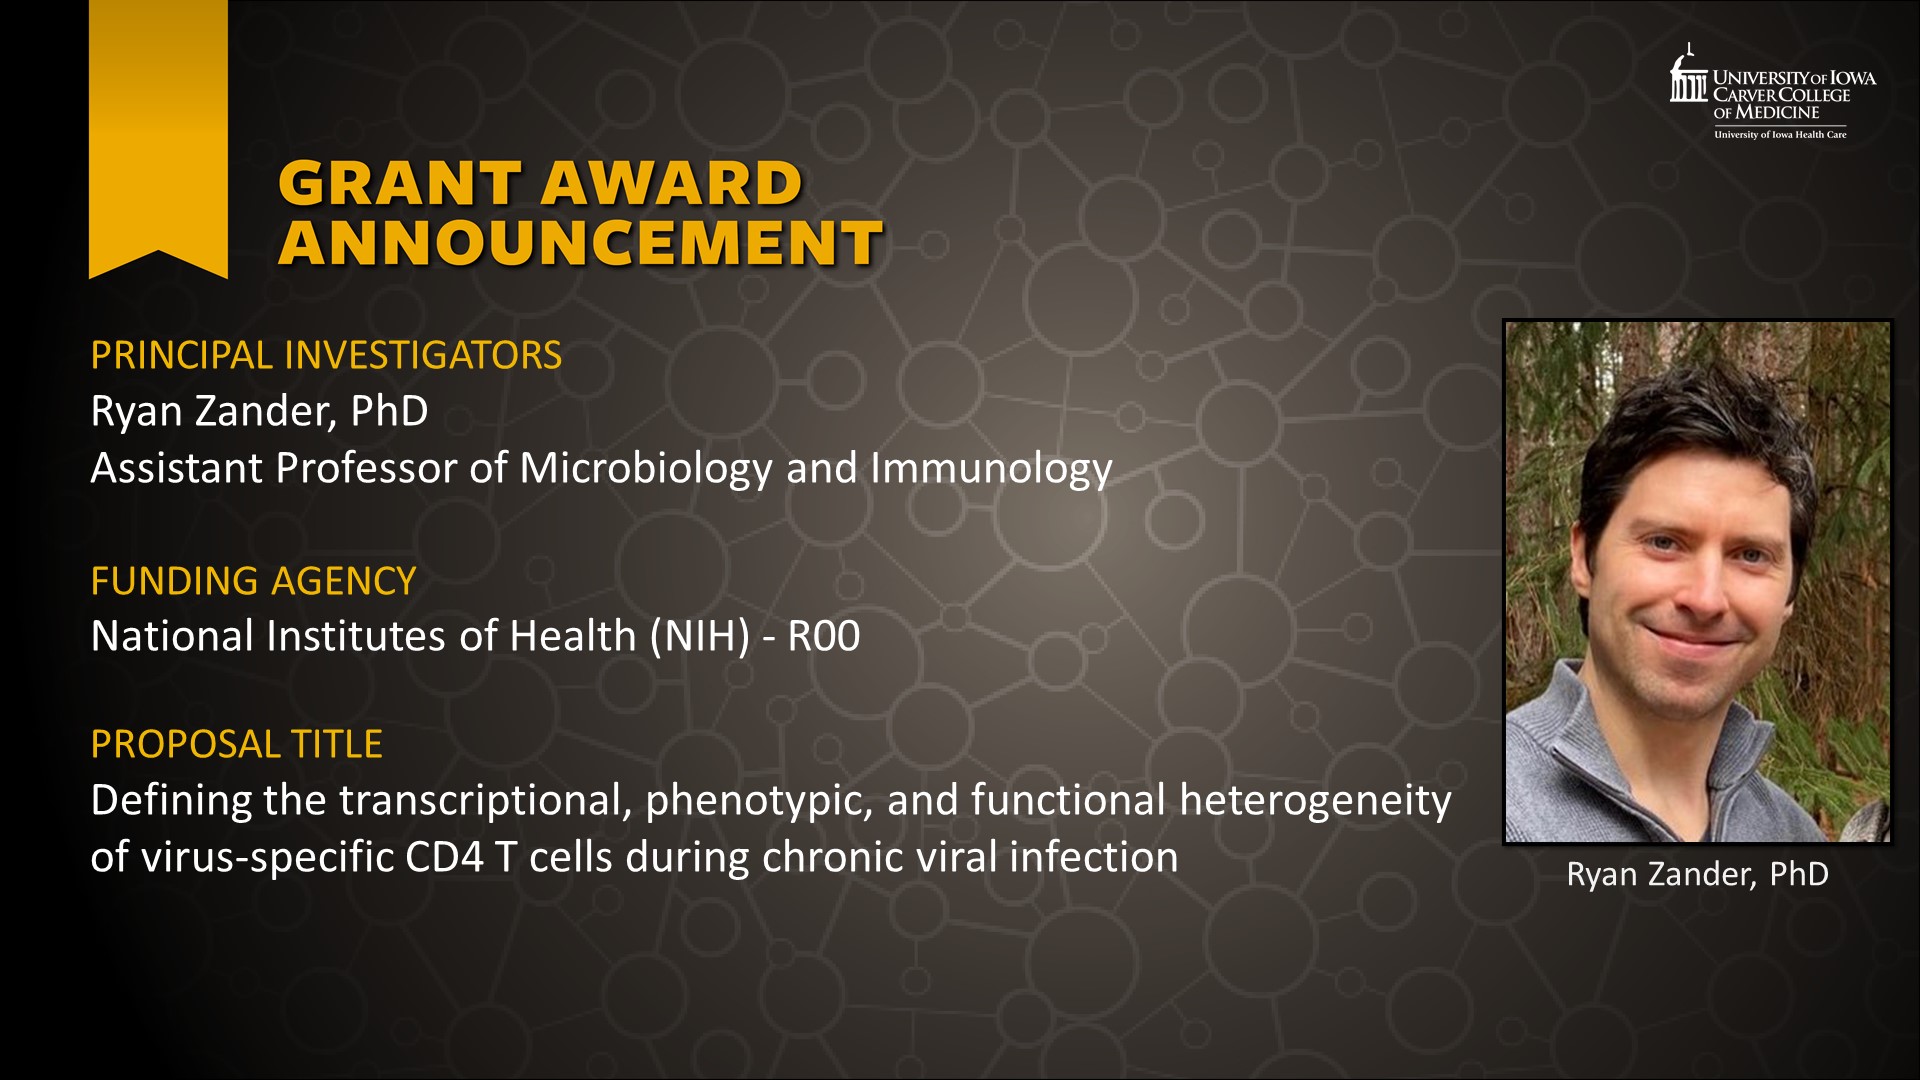 Ryan Zander image - new NIH funding announcement